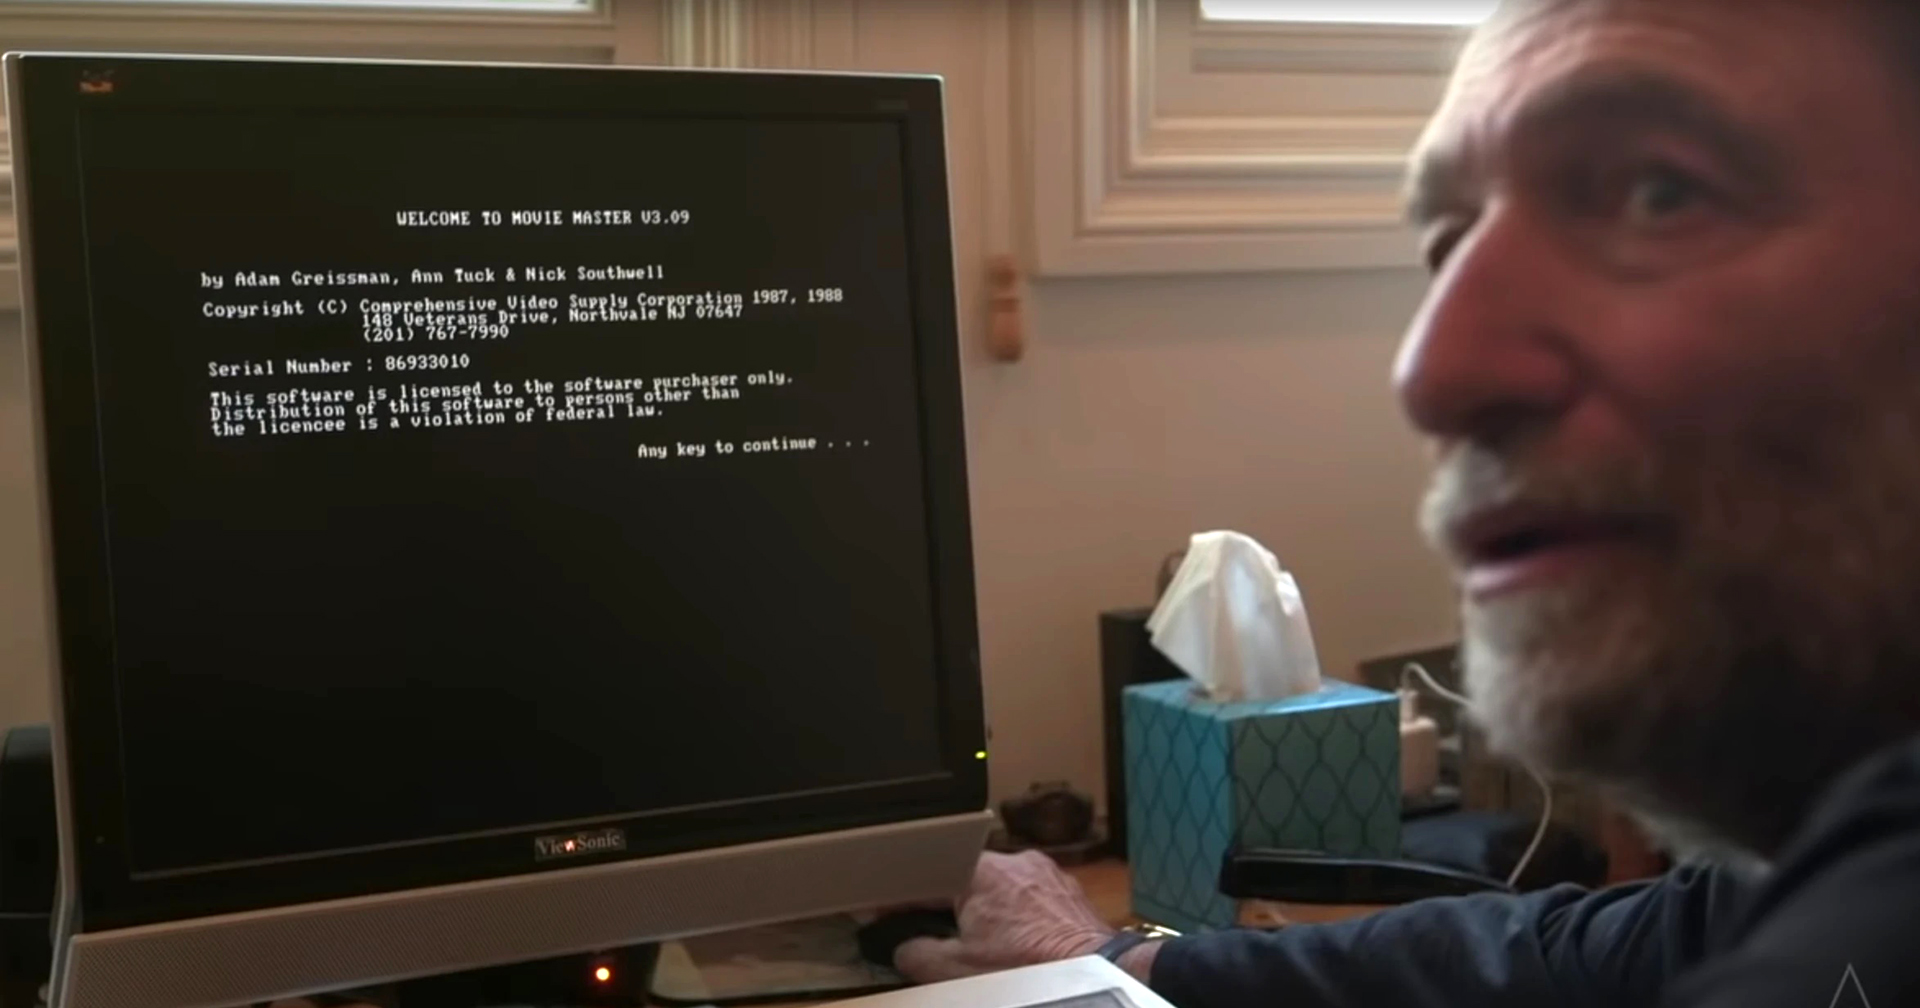 อีริก รอธ เขียนบท ‘Dune’ ด้วยซอฟต์แวร์ MS-DOS อายุกว่า 30 ปี